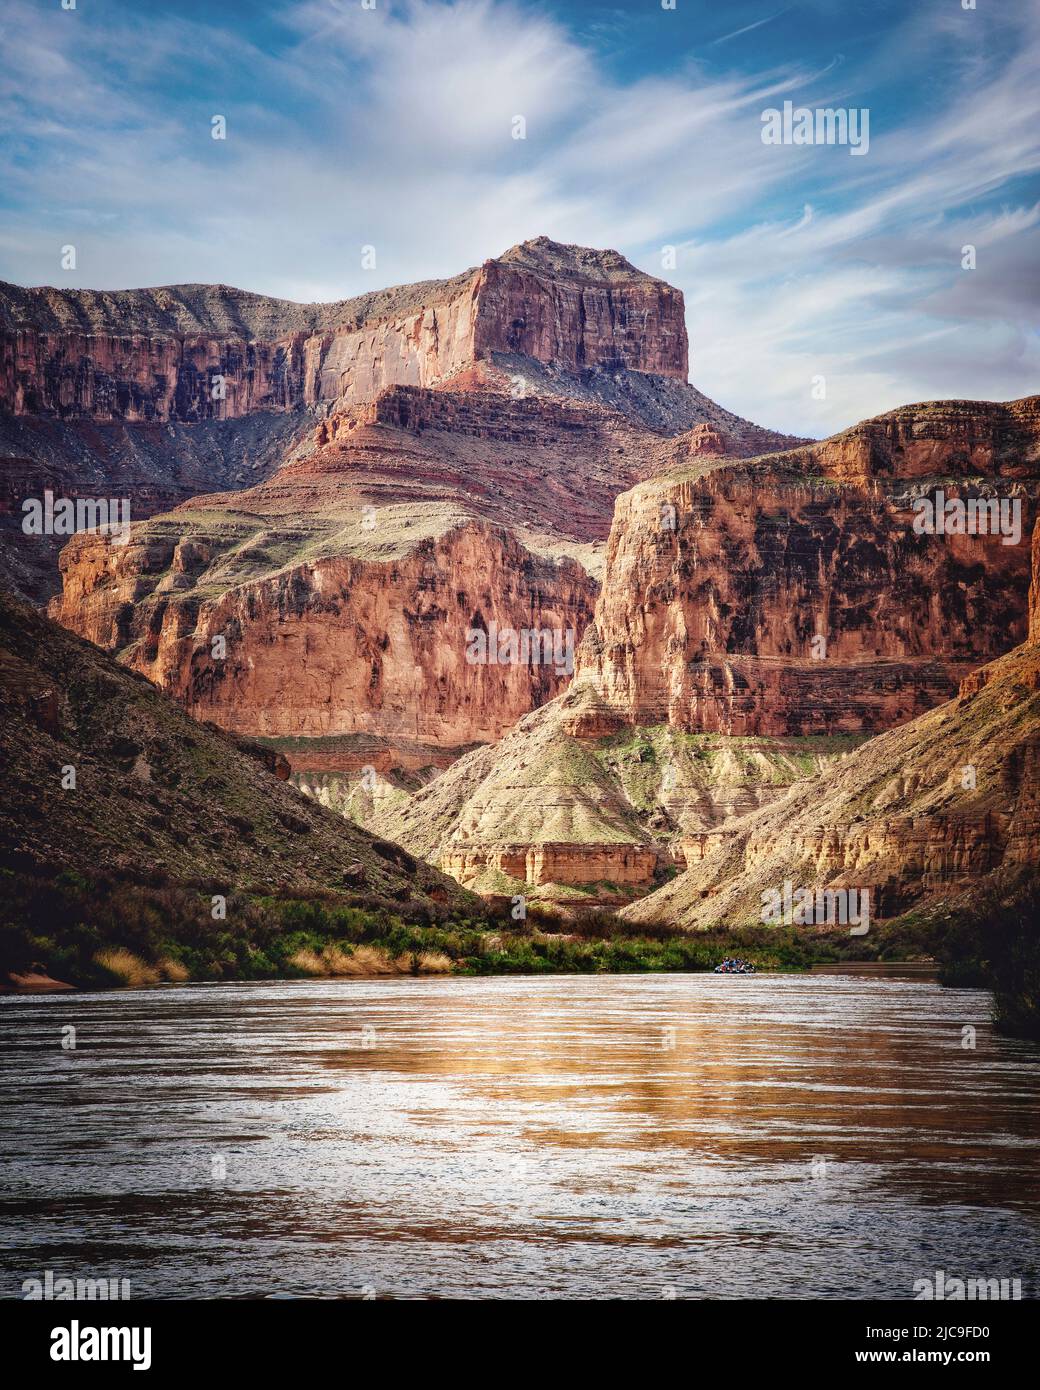 Las paredes del cañón rodean el río Colorado en el Gran Cañón de Arizona. Foto de stock